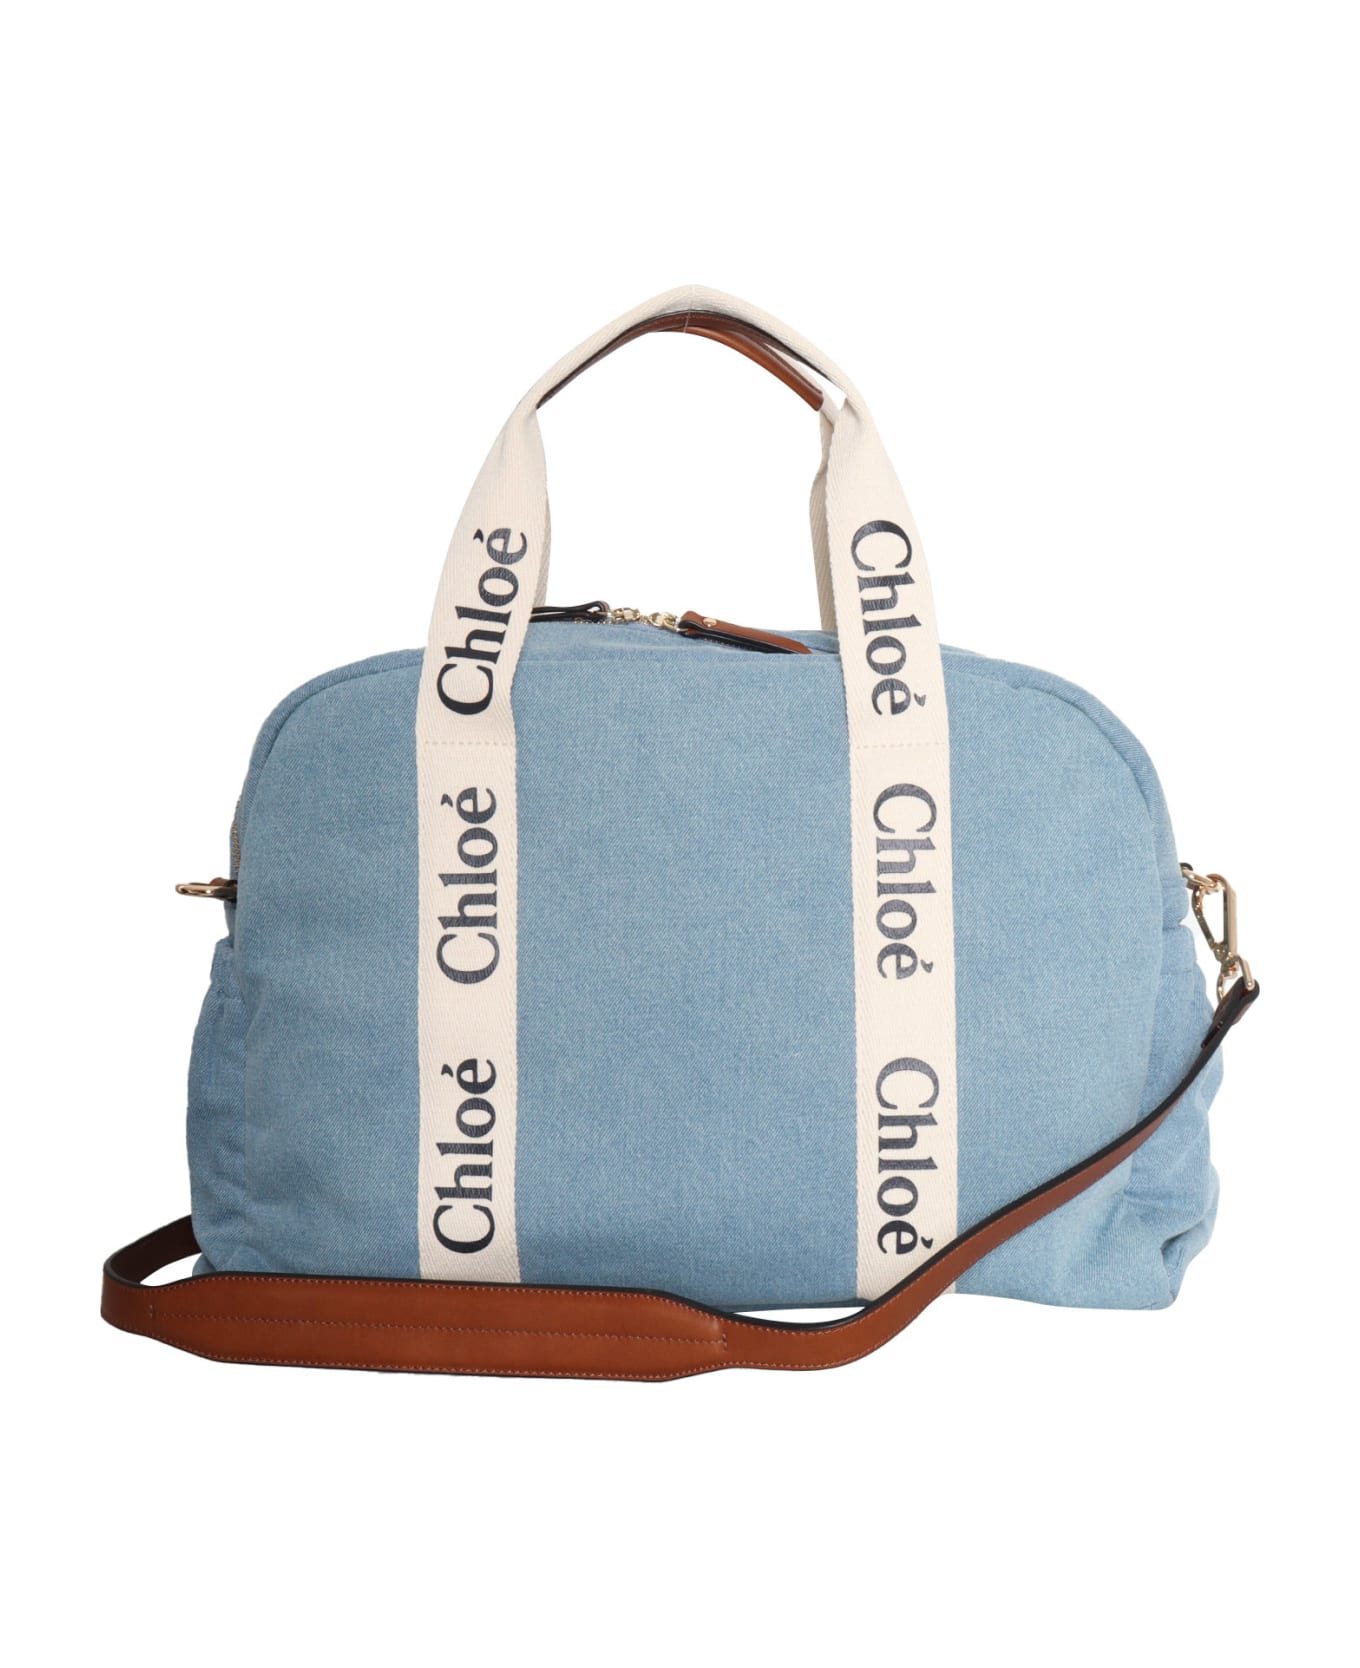 Chloé Changing Bag - BLUE